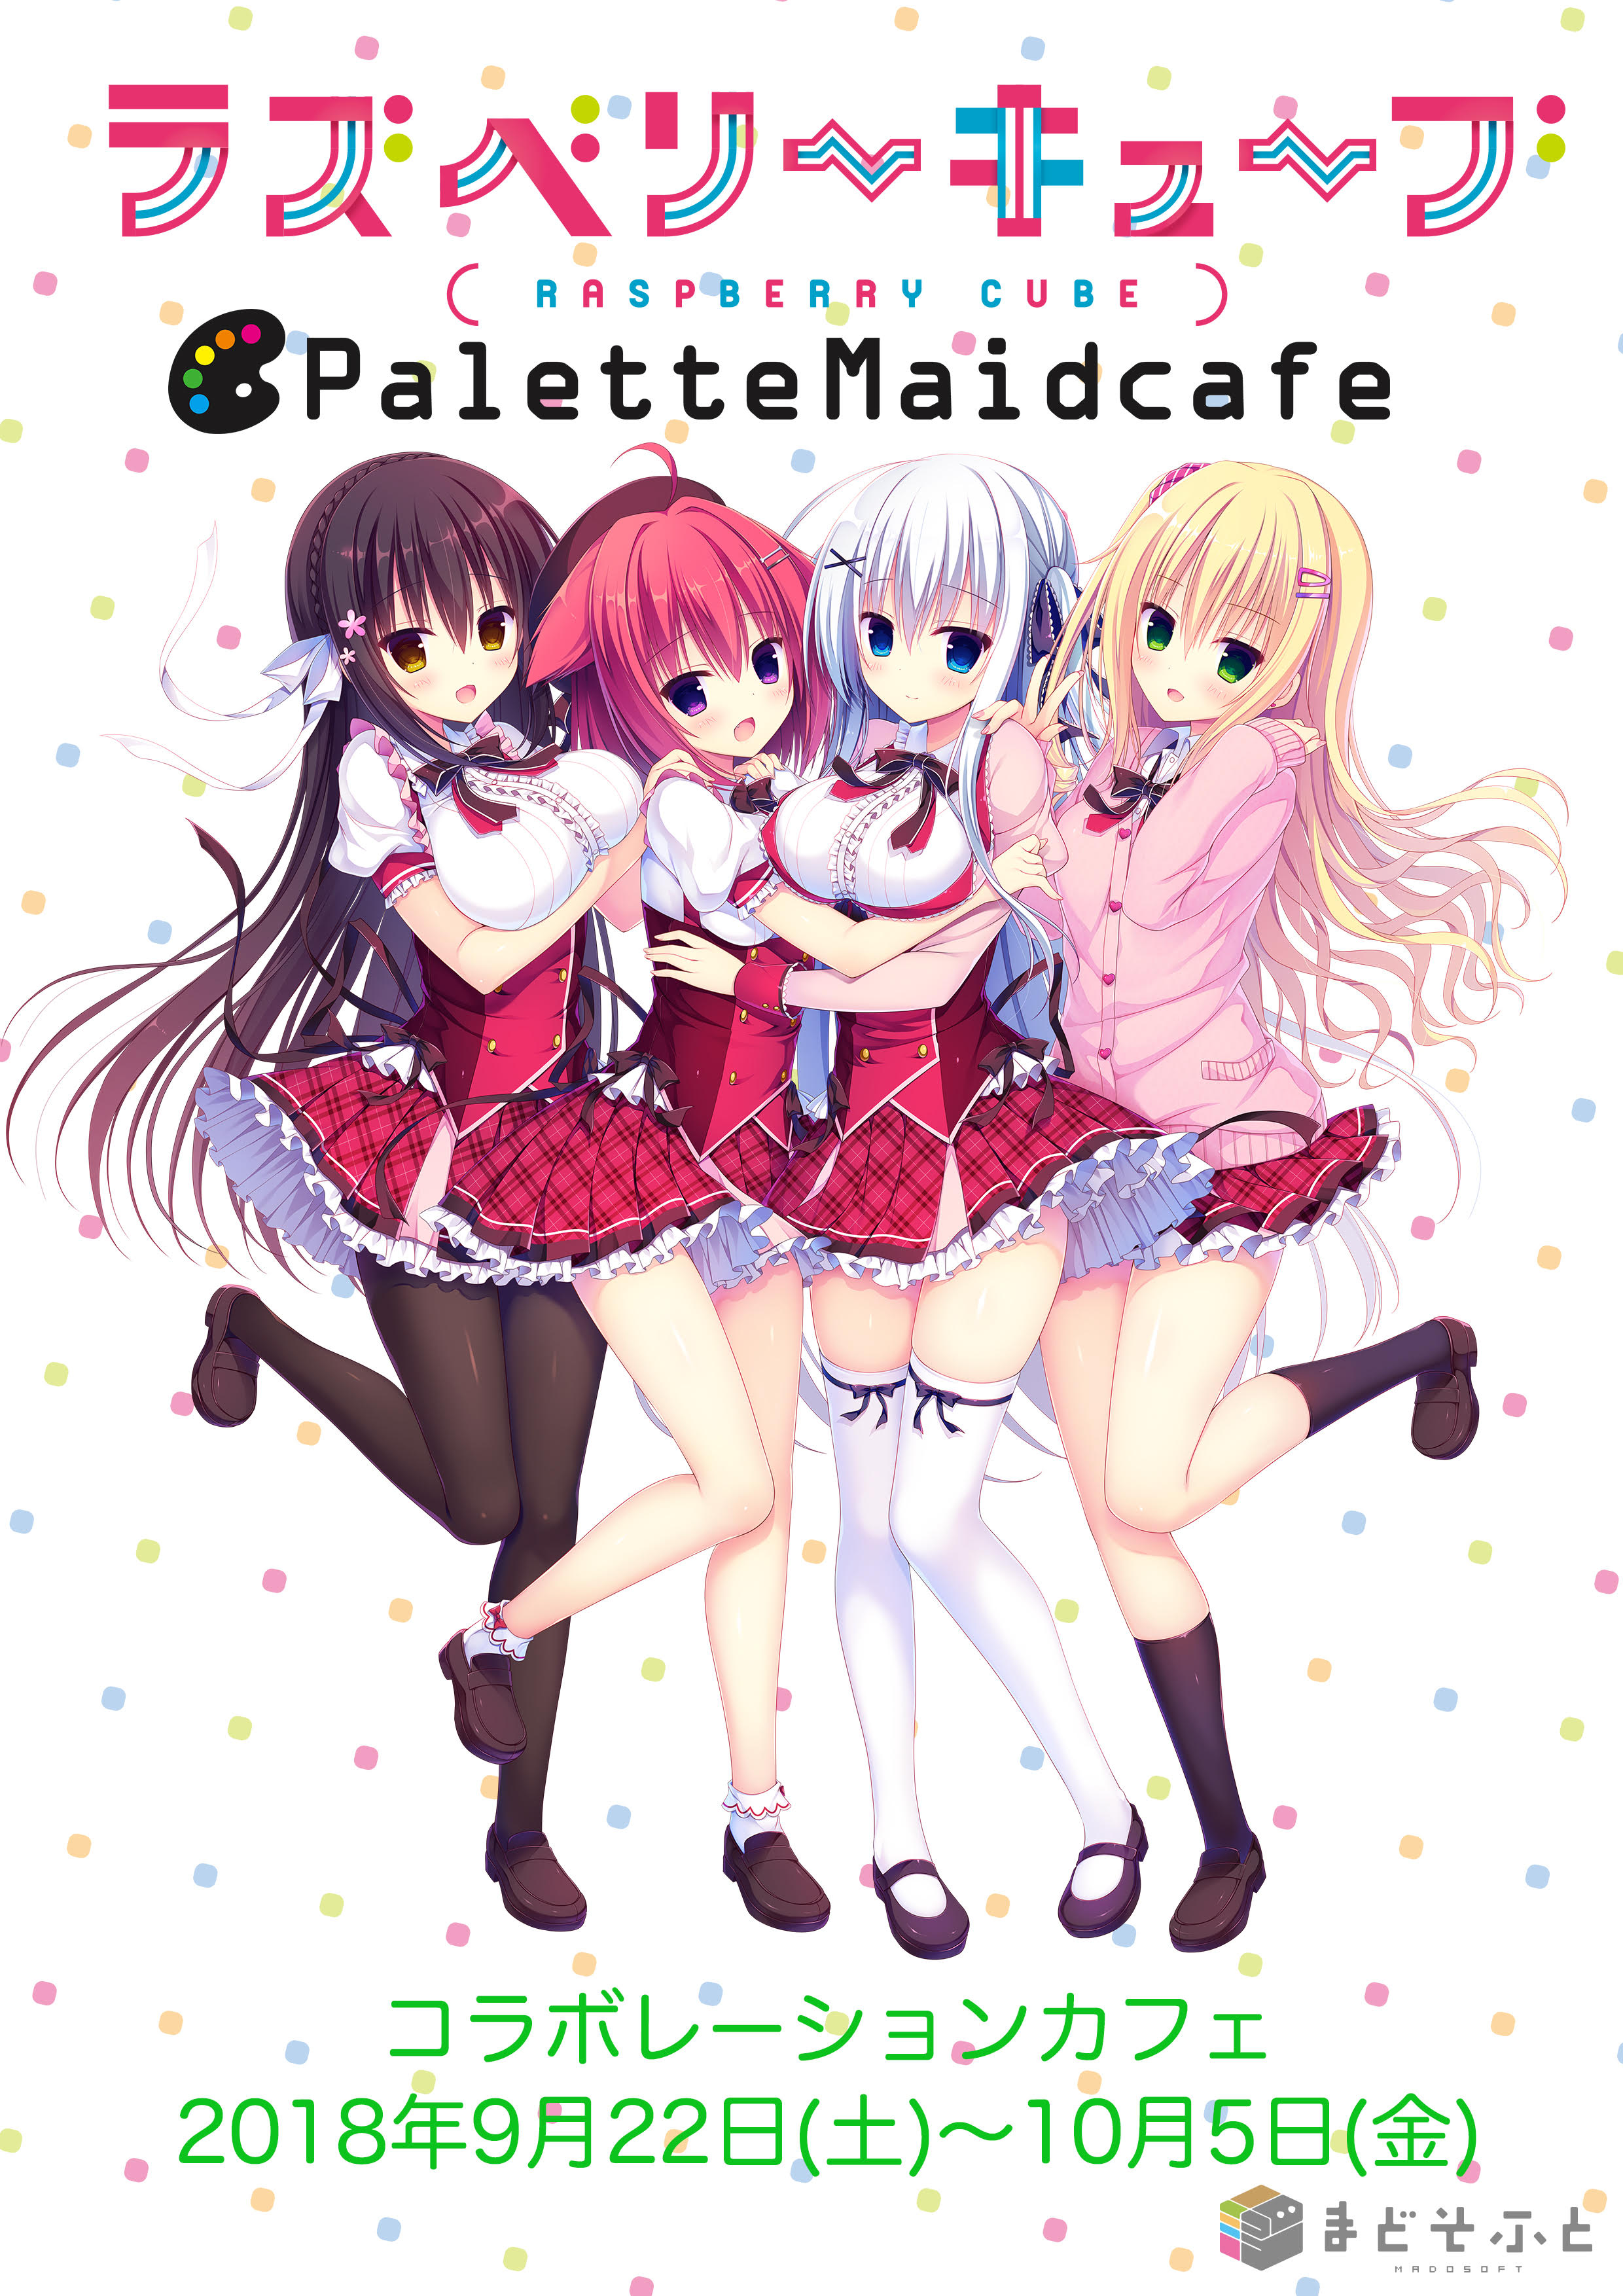 ラズベリーキューブ× Palette maidcafe１.jpg